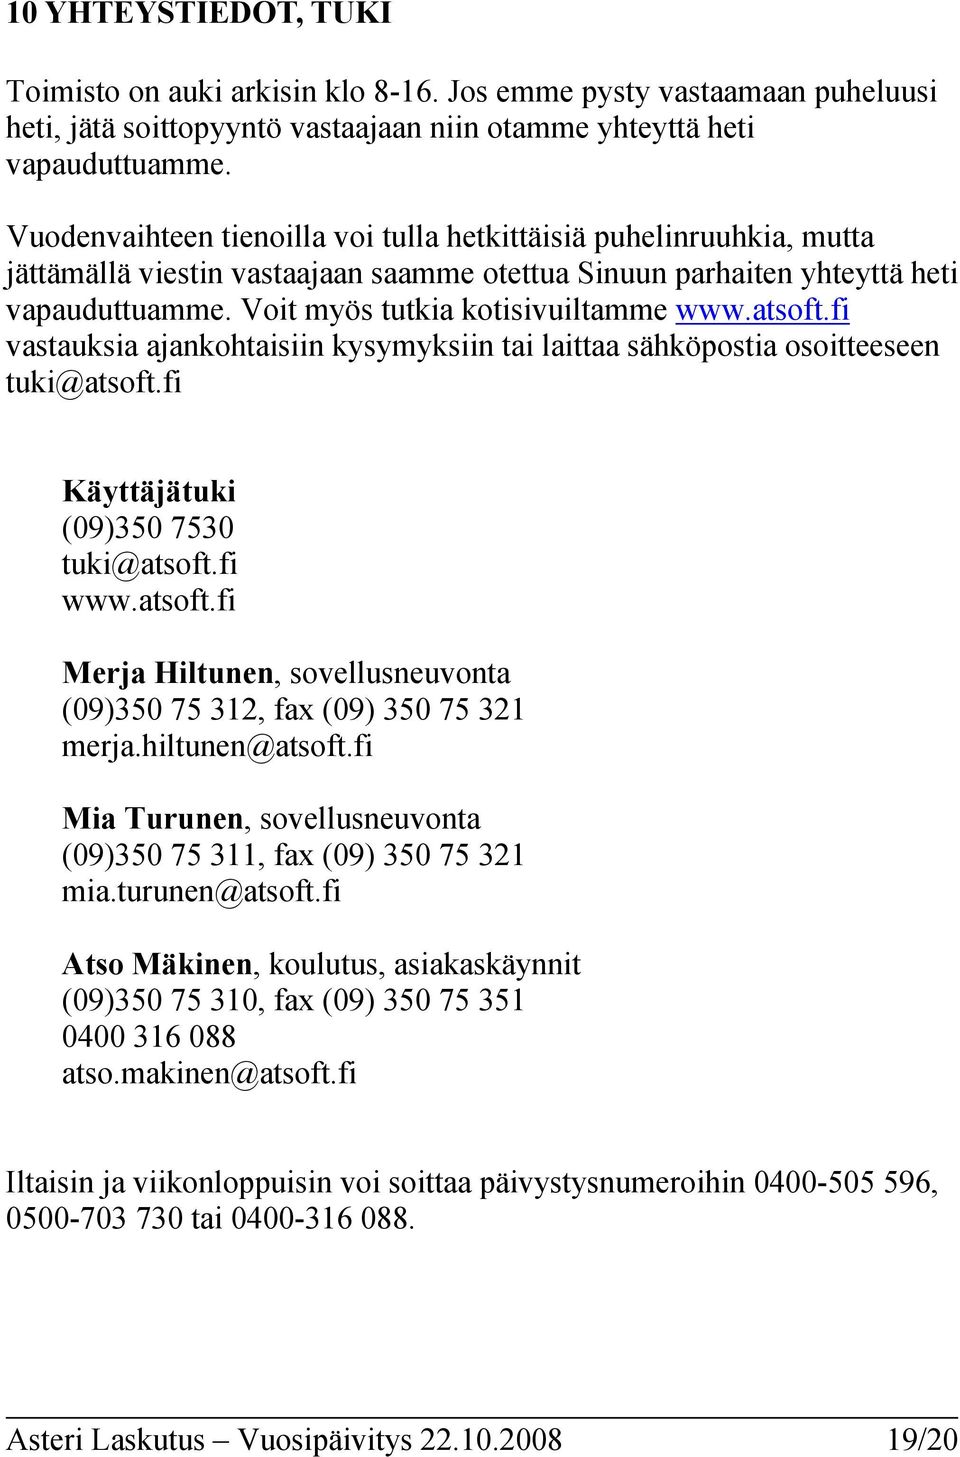 atsoft.fi vastauksia ajankohtaisiin kysymyksiin tai laittaa sähköpostia osoitteeseen tuki@atsoft.fi Käyttäjätuki (09)350 7530 tuki@atsoft.fi www.atsoft.fi Merja Hiltunen, sovellusneuvonta (09)350 75 312, fax (09) 350 75 321 merja.